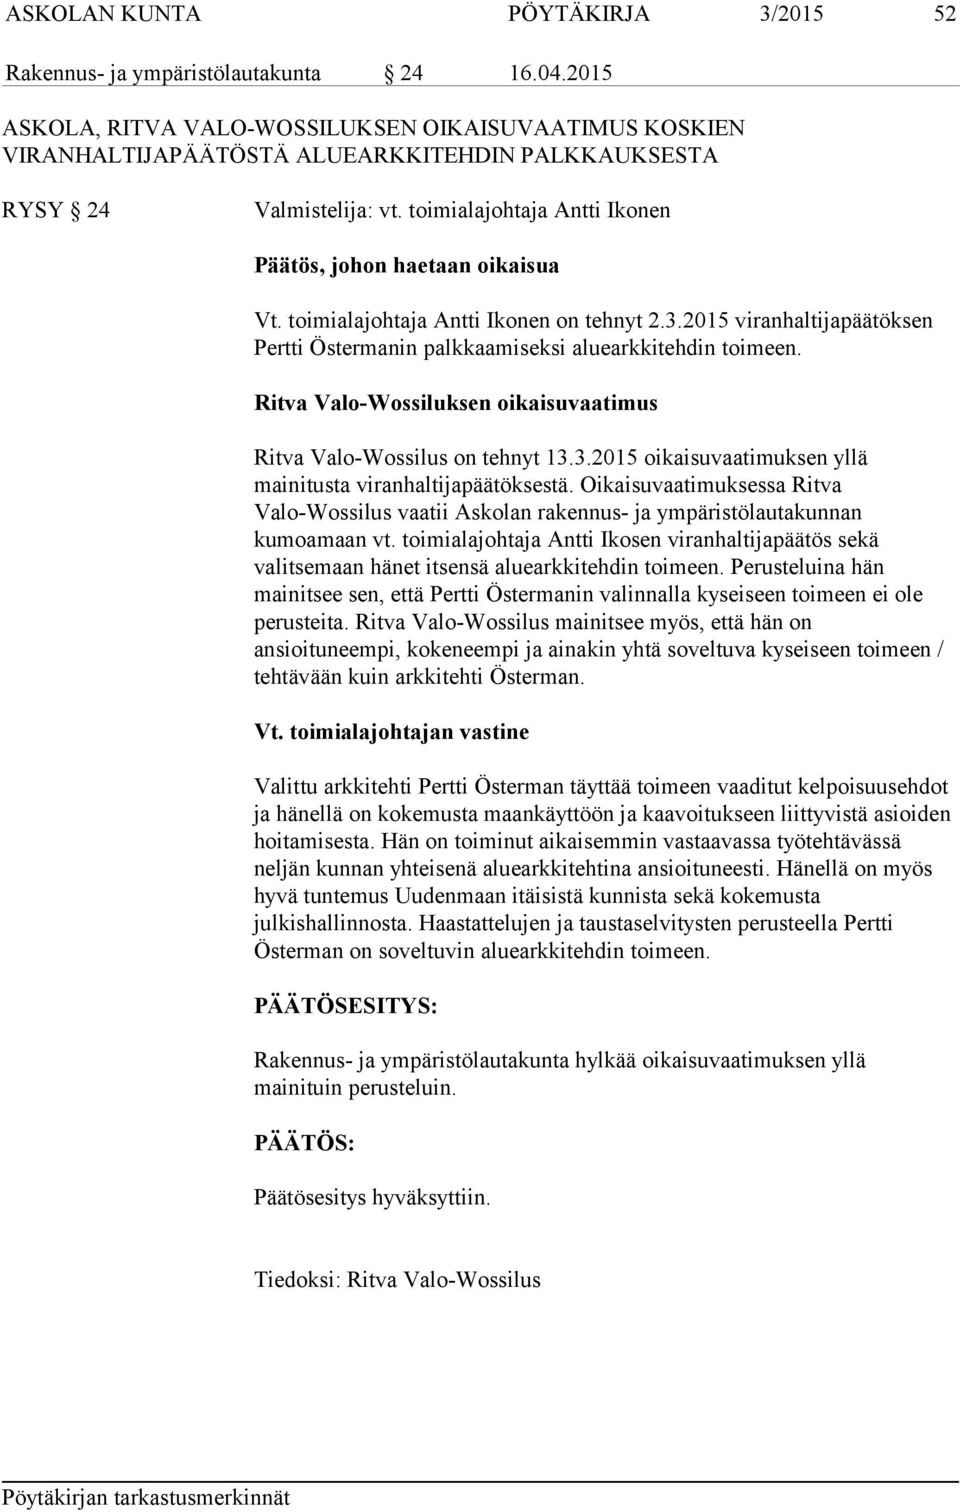 toimialajohtaja Antti Ikonen on tehnyt 2.3.2015 viranhaltijapäätöksen Pertti Östermanin palkkaamiseksi aluearkkitehdin toimeen. Ritva Valo-Wossiluksen oikaisuvaatimus Ritva Valo-Wossilus on tehnyt 13.